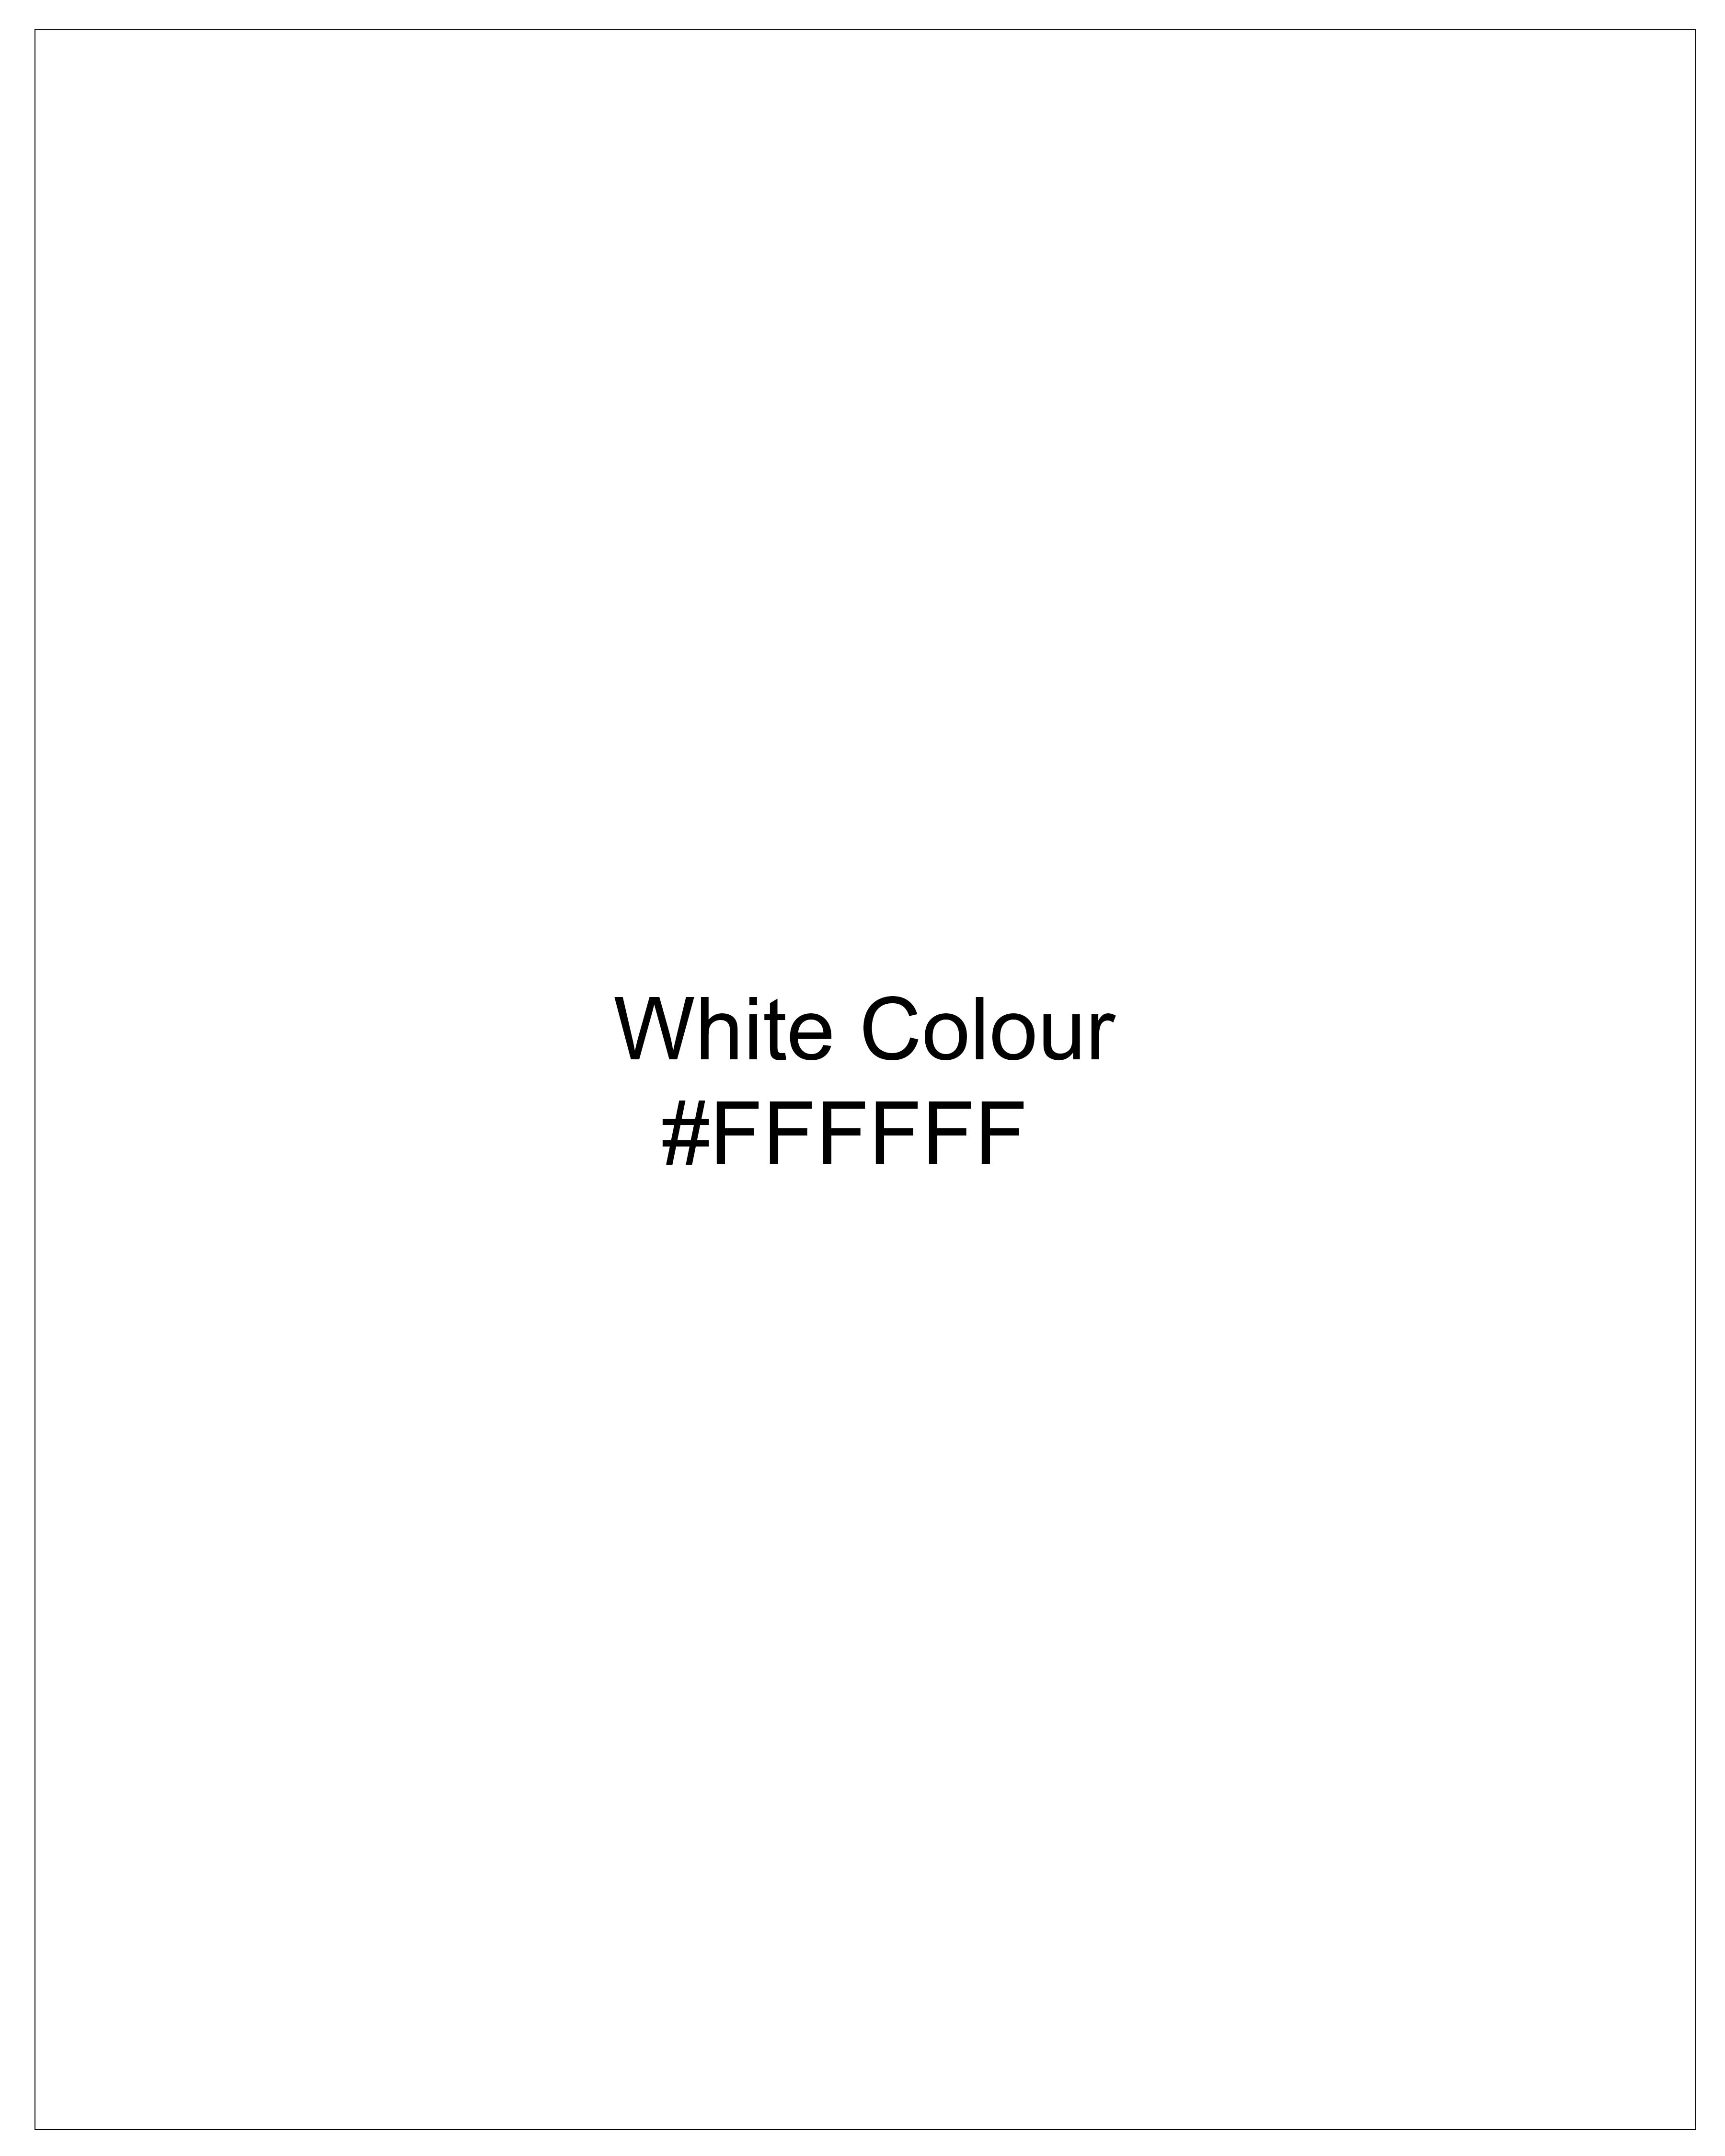 Bright White Rinse Wash Hand Painted Denim J100-ART006-30, J100-ART006-32, J100-ART006-34, J100-ART006-36, J100-ART006-38, J100-ART006-40